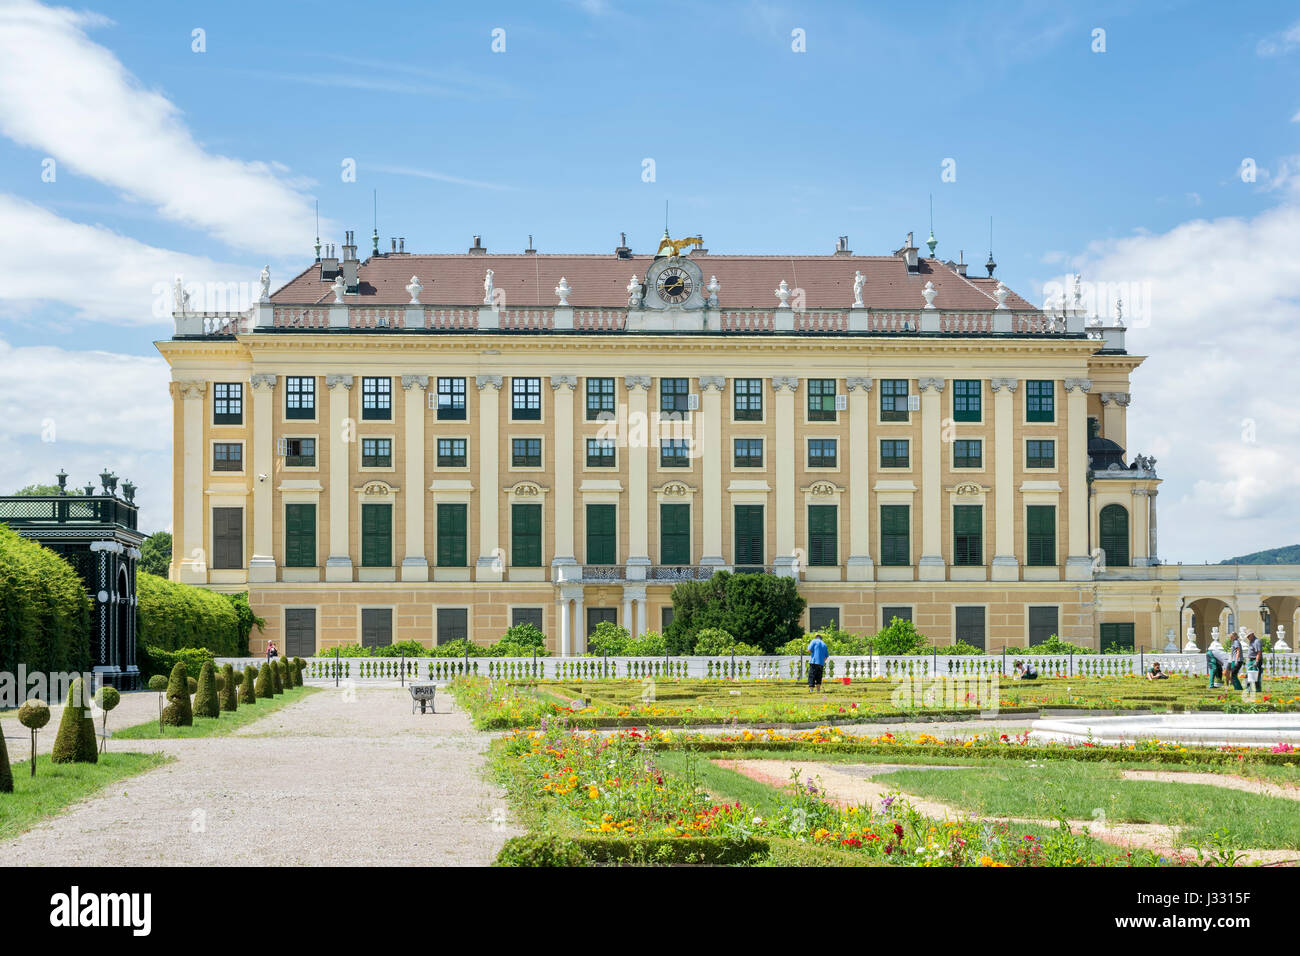 Viena, Austria, en Julio 4,2016: Jardines del Palacio de Schonbrunn, antigua residencia de verano imperial de los monarcas Habsburgo situado en Viena, Austria. Foto de stock